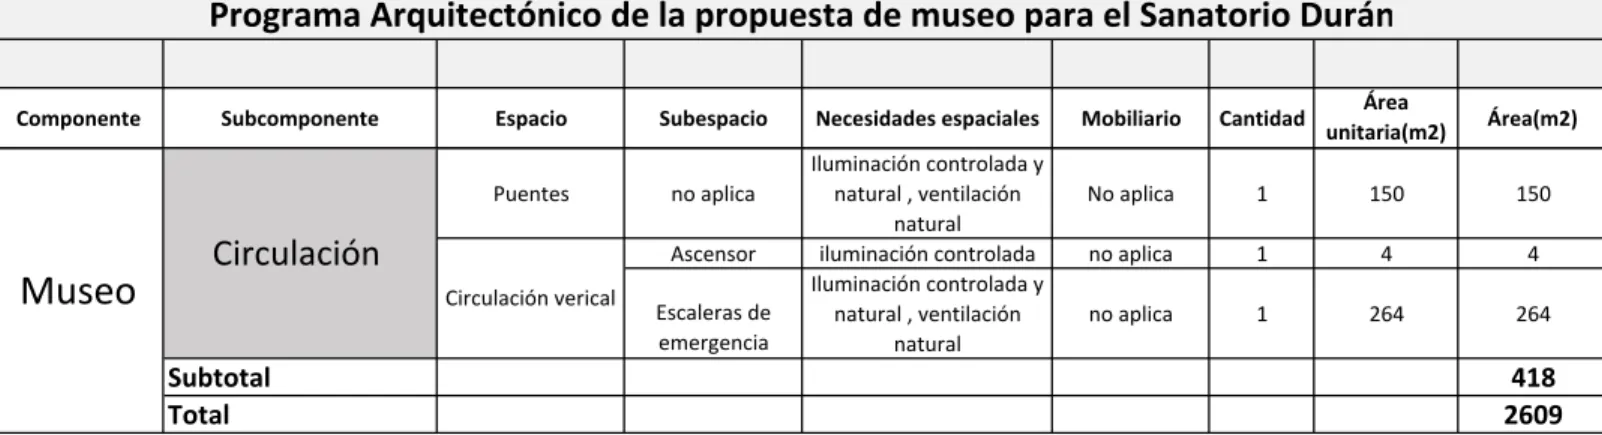 Tabla 2: Tabla del programa arquitectónico del museo para el plan maestro de  revitalización del sanatorio Duran.